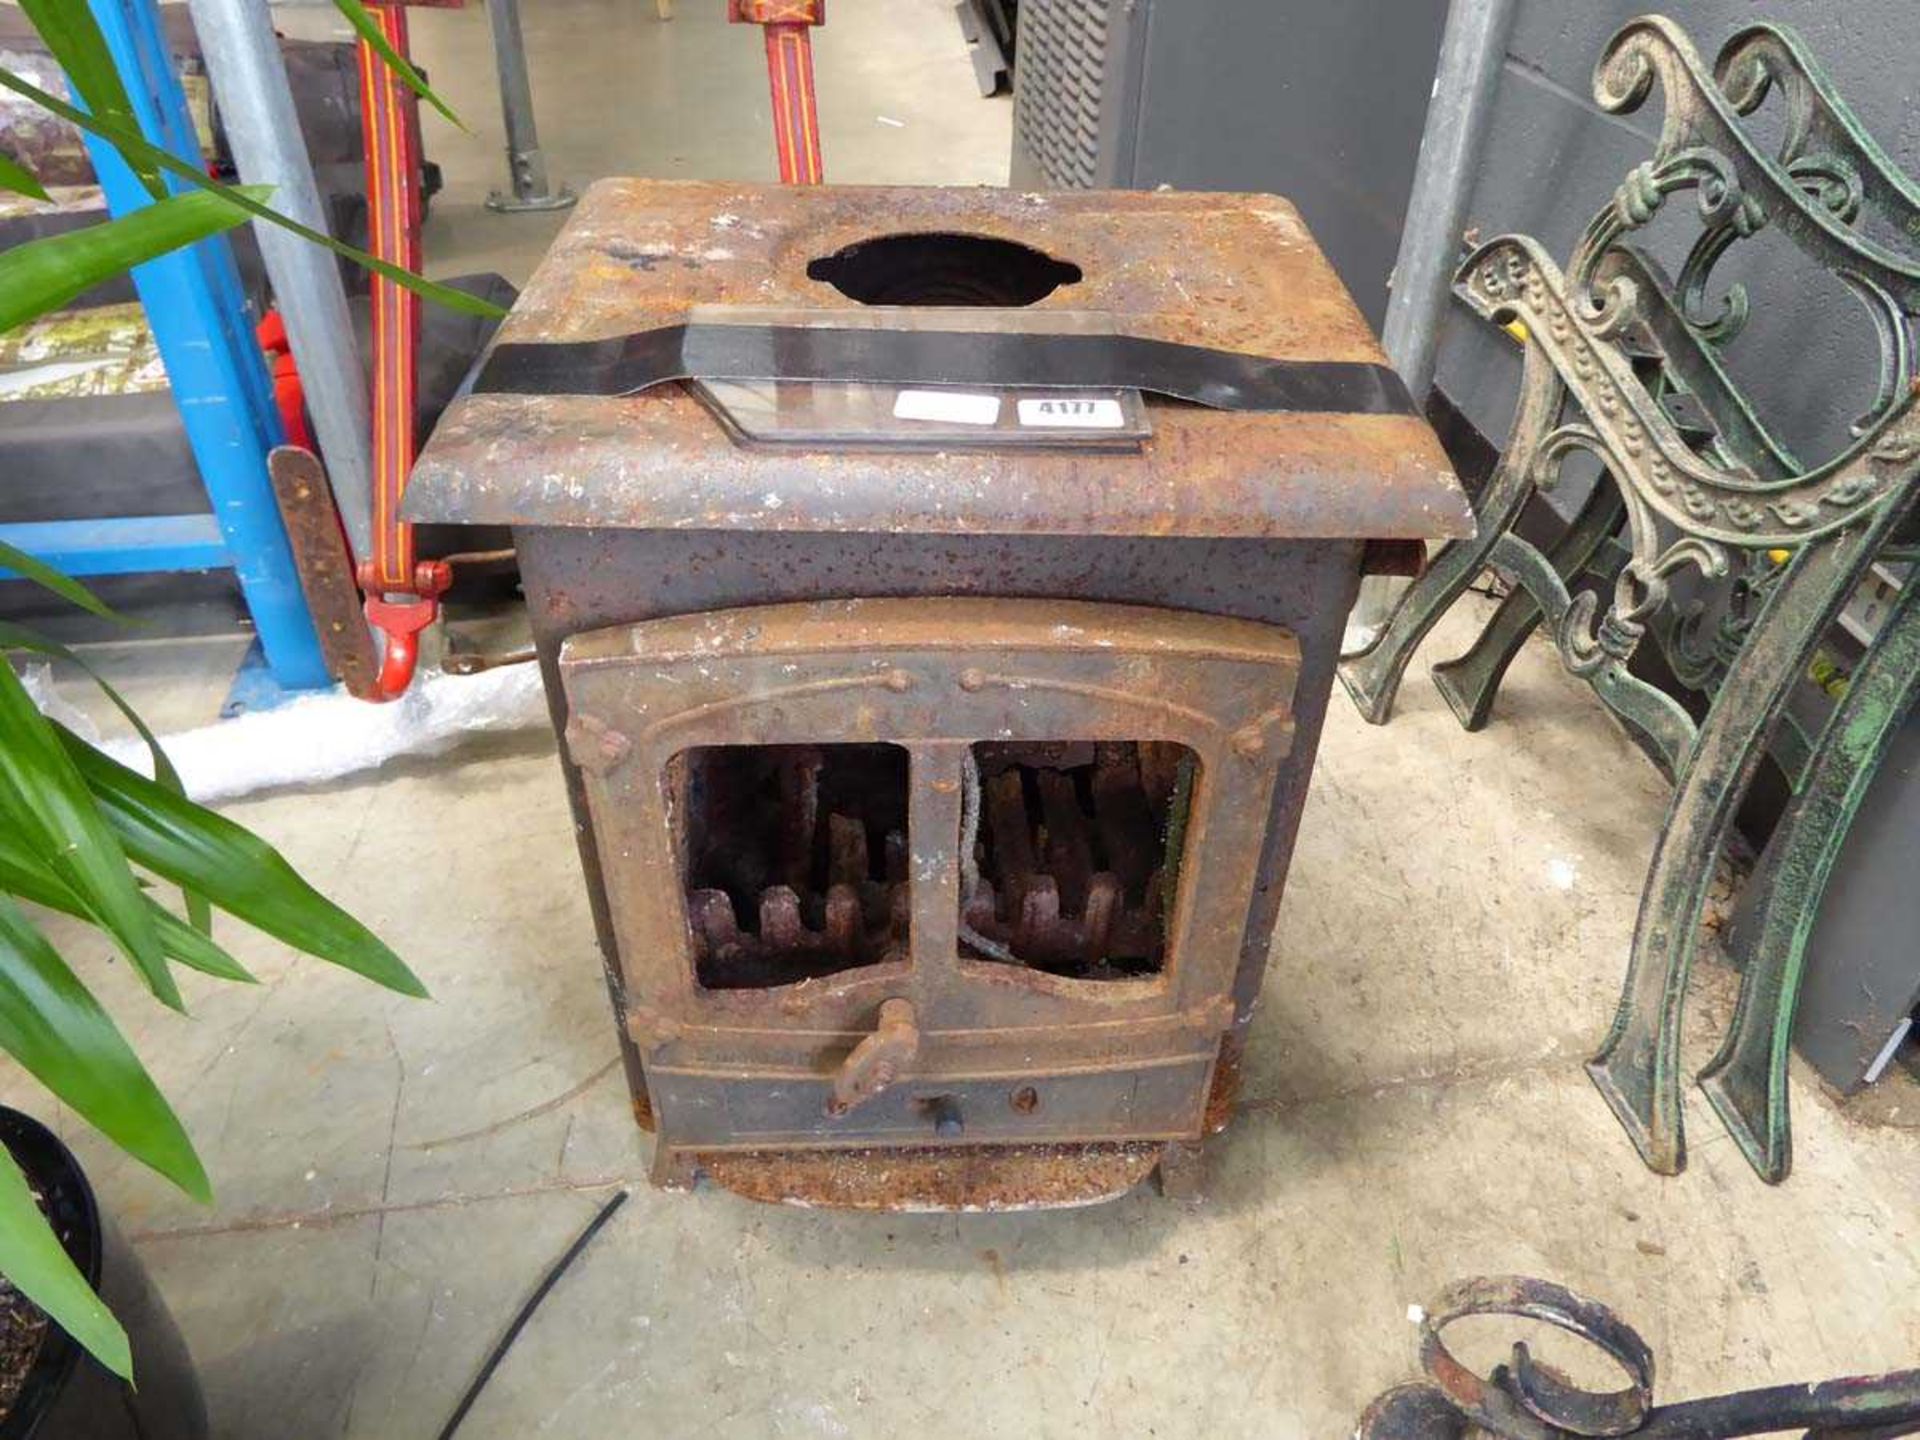 Wooden burner stove in need of repair